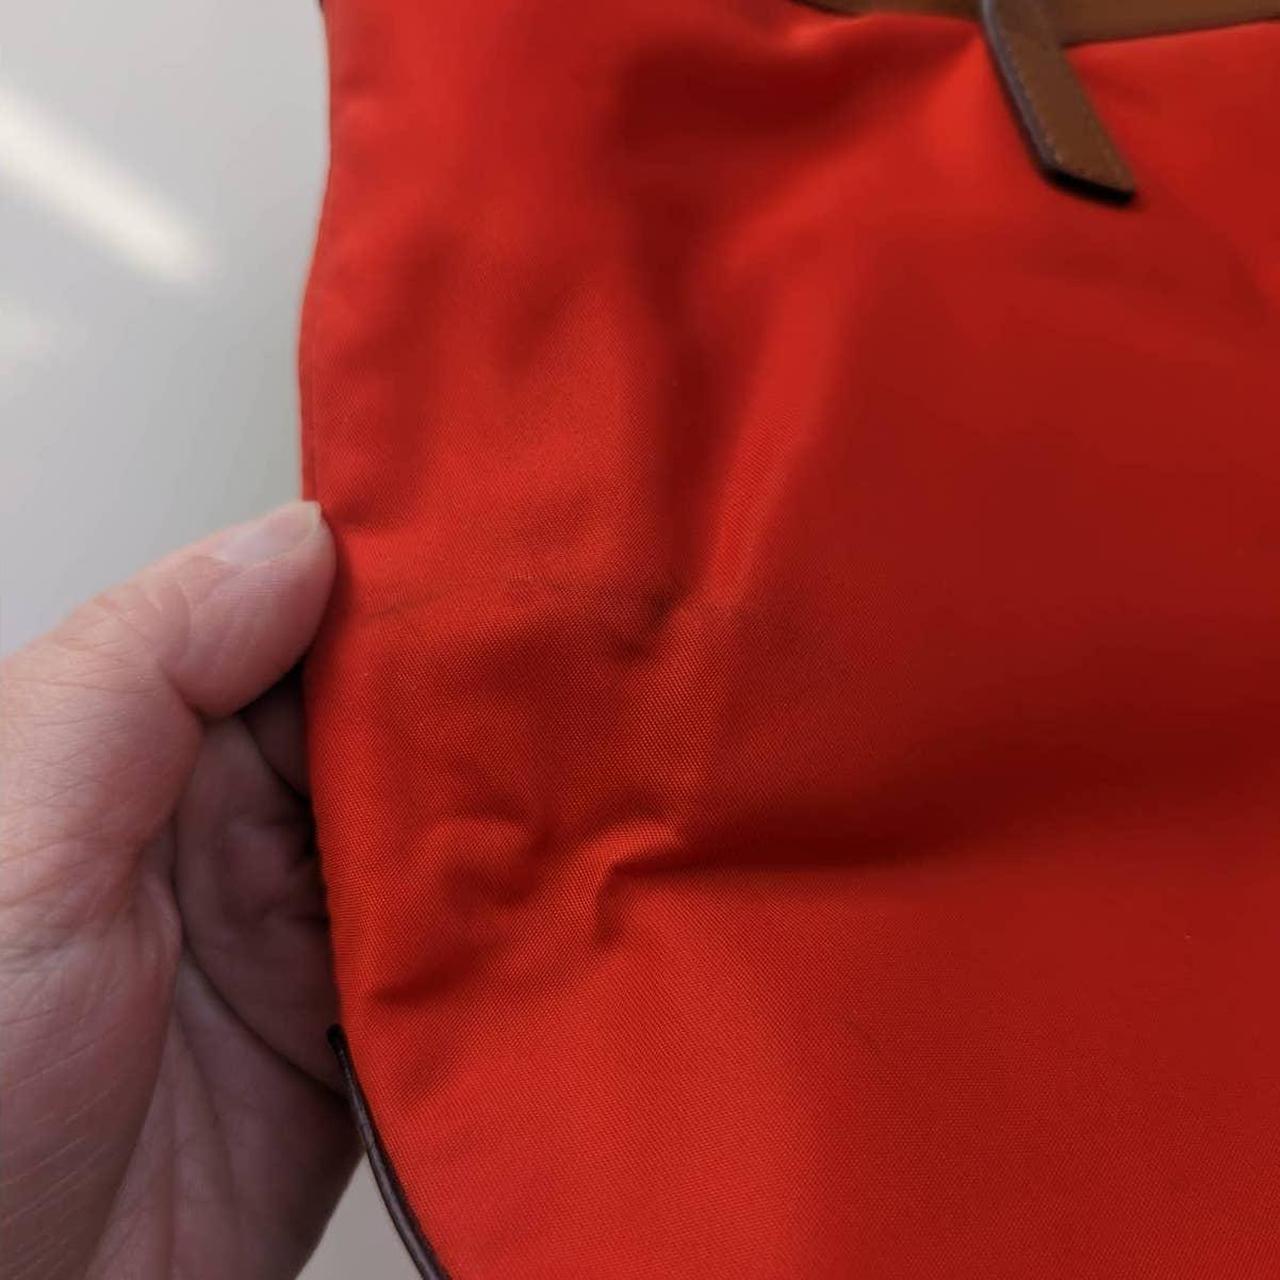 Michael Kors, Bags, Burnt Orange Michael Kors Bag